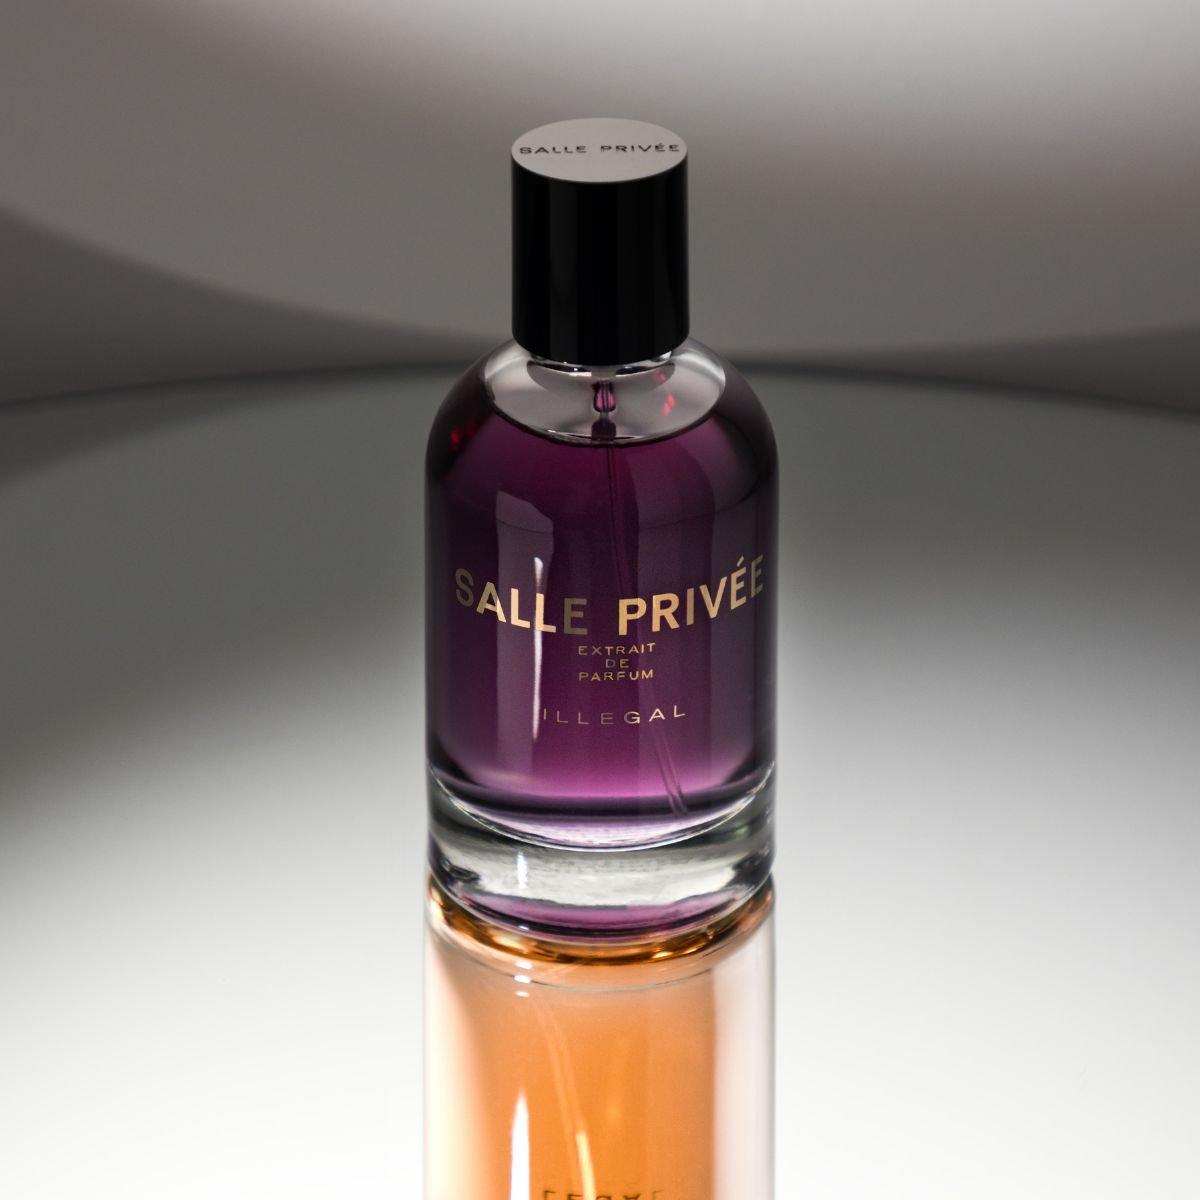 Salle Privee - Illegal extrait de parfum 100 ml